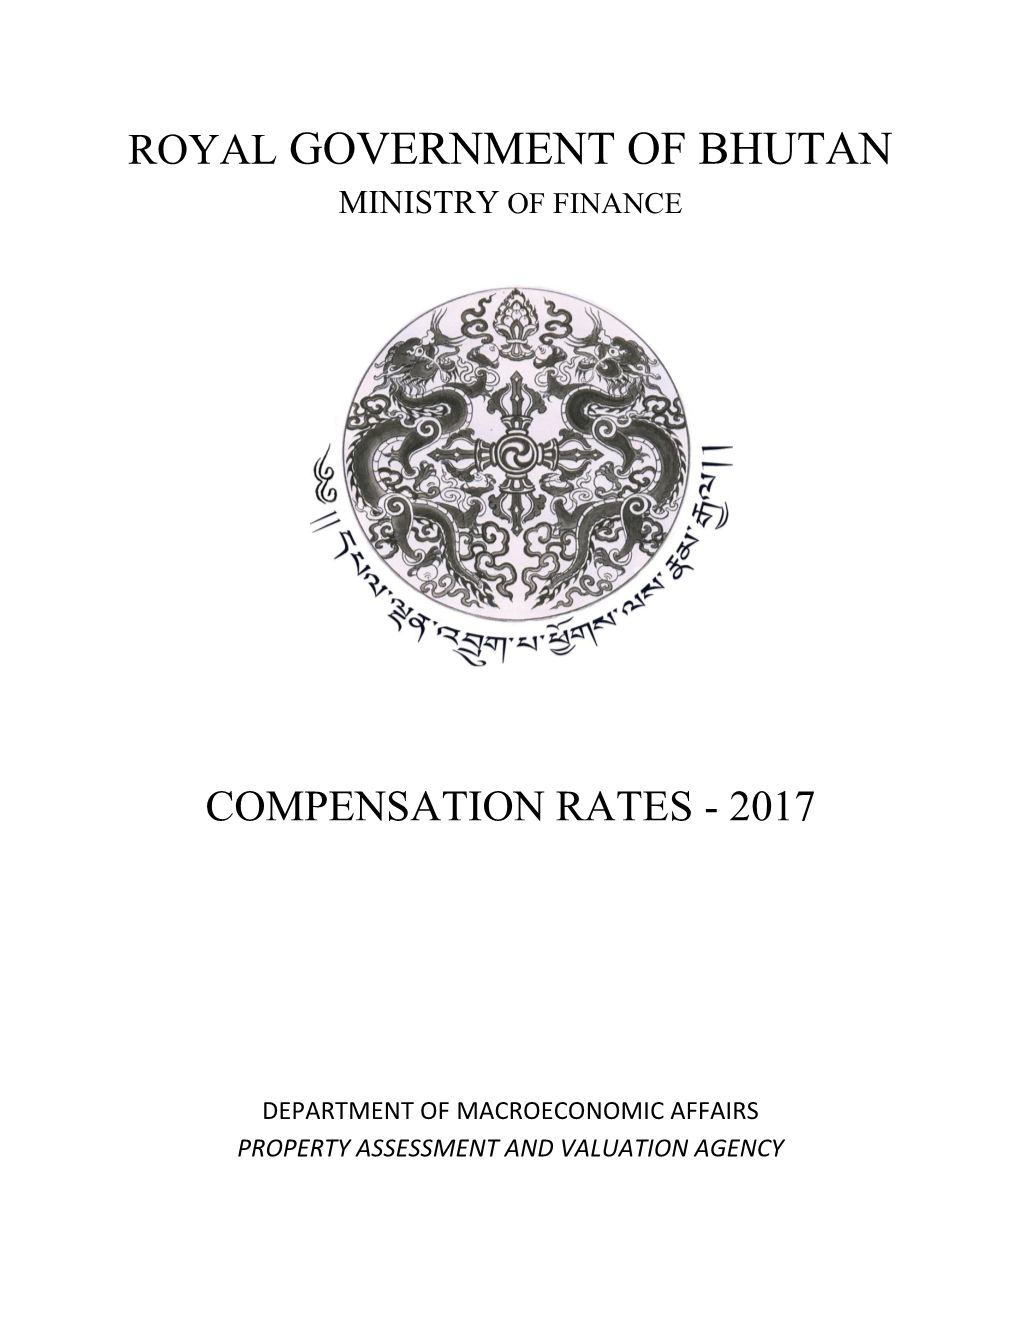 Compensation Rates - 2017